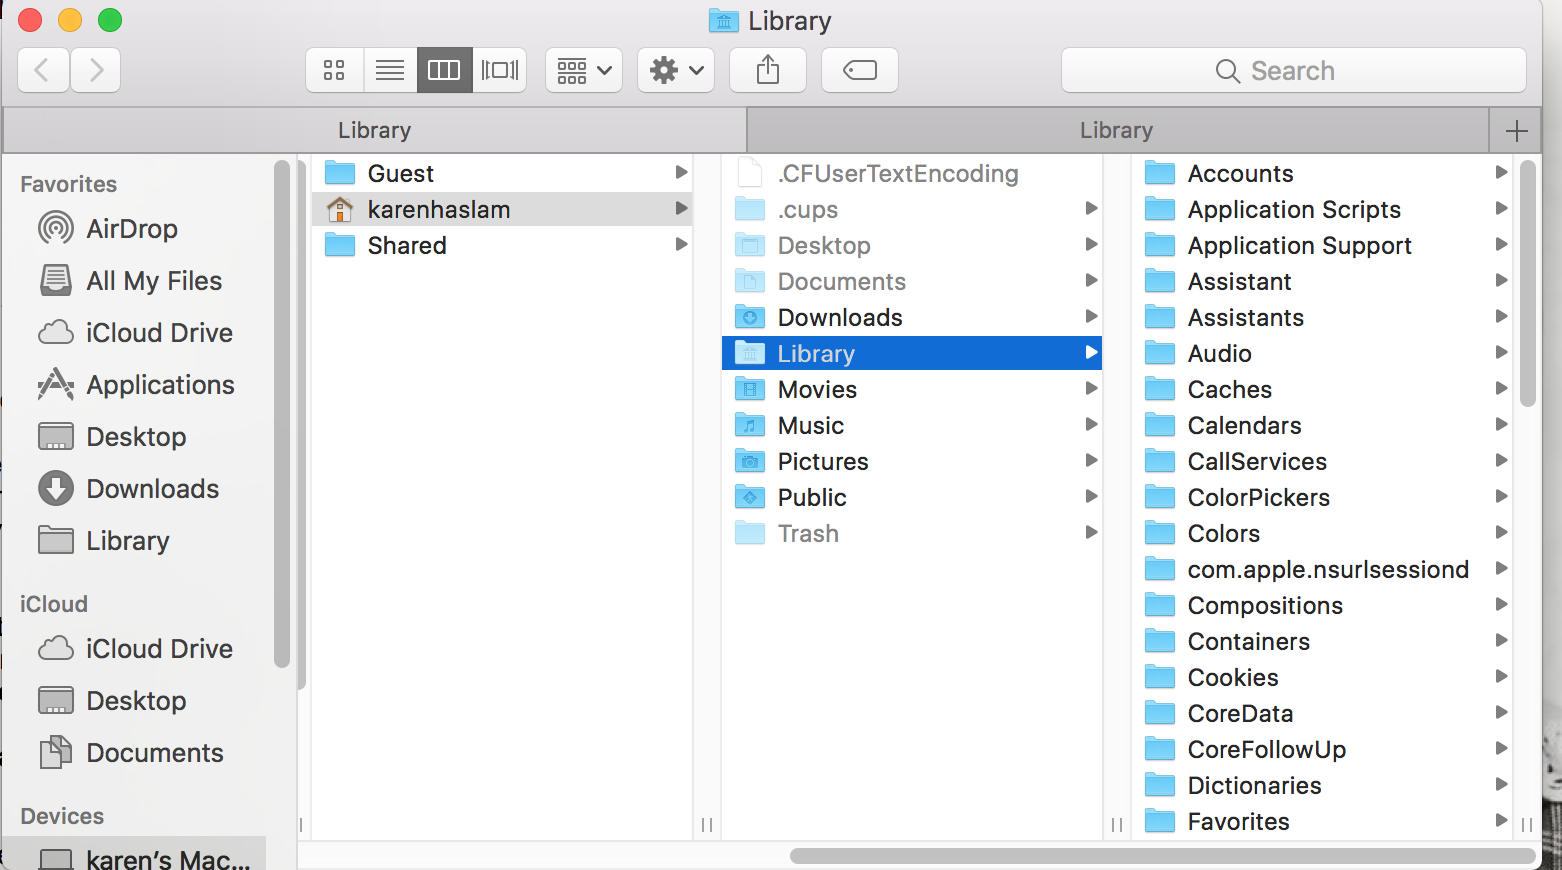 В этом материале мы рассказали о том, как включить отображение папки Библиотеки Library на Mac